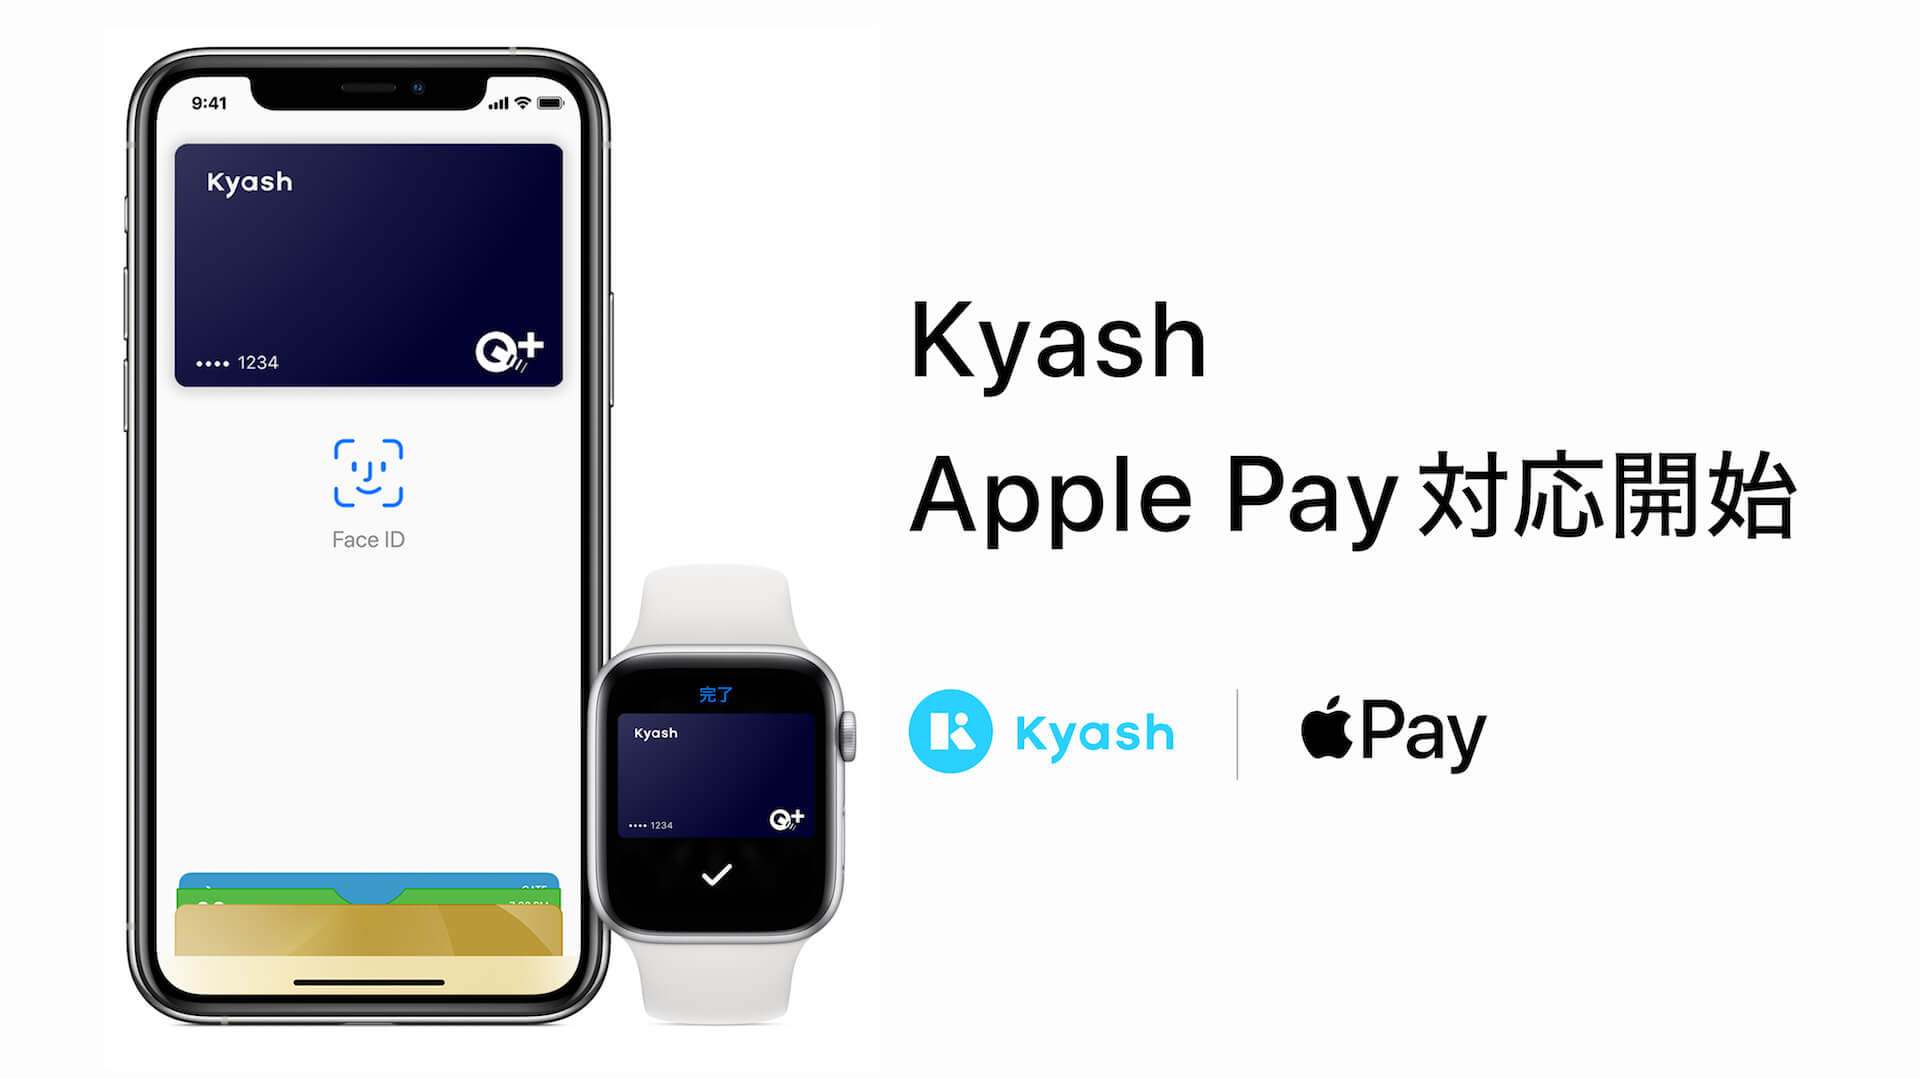 ウォレットアプリ Kyash がapple Payに対応 Iphone Apple Watchで